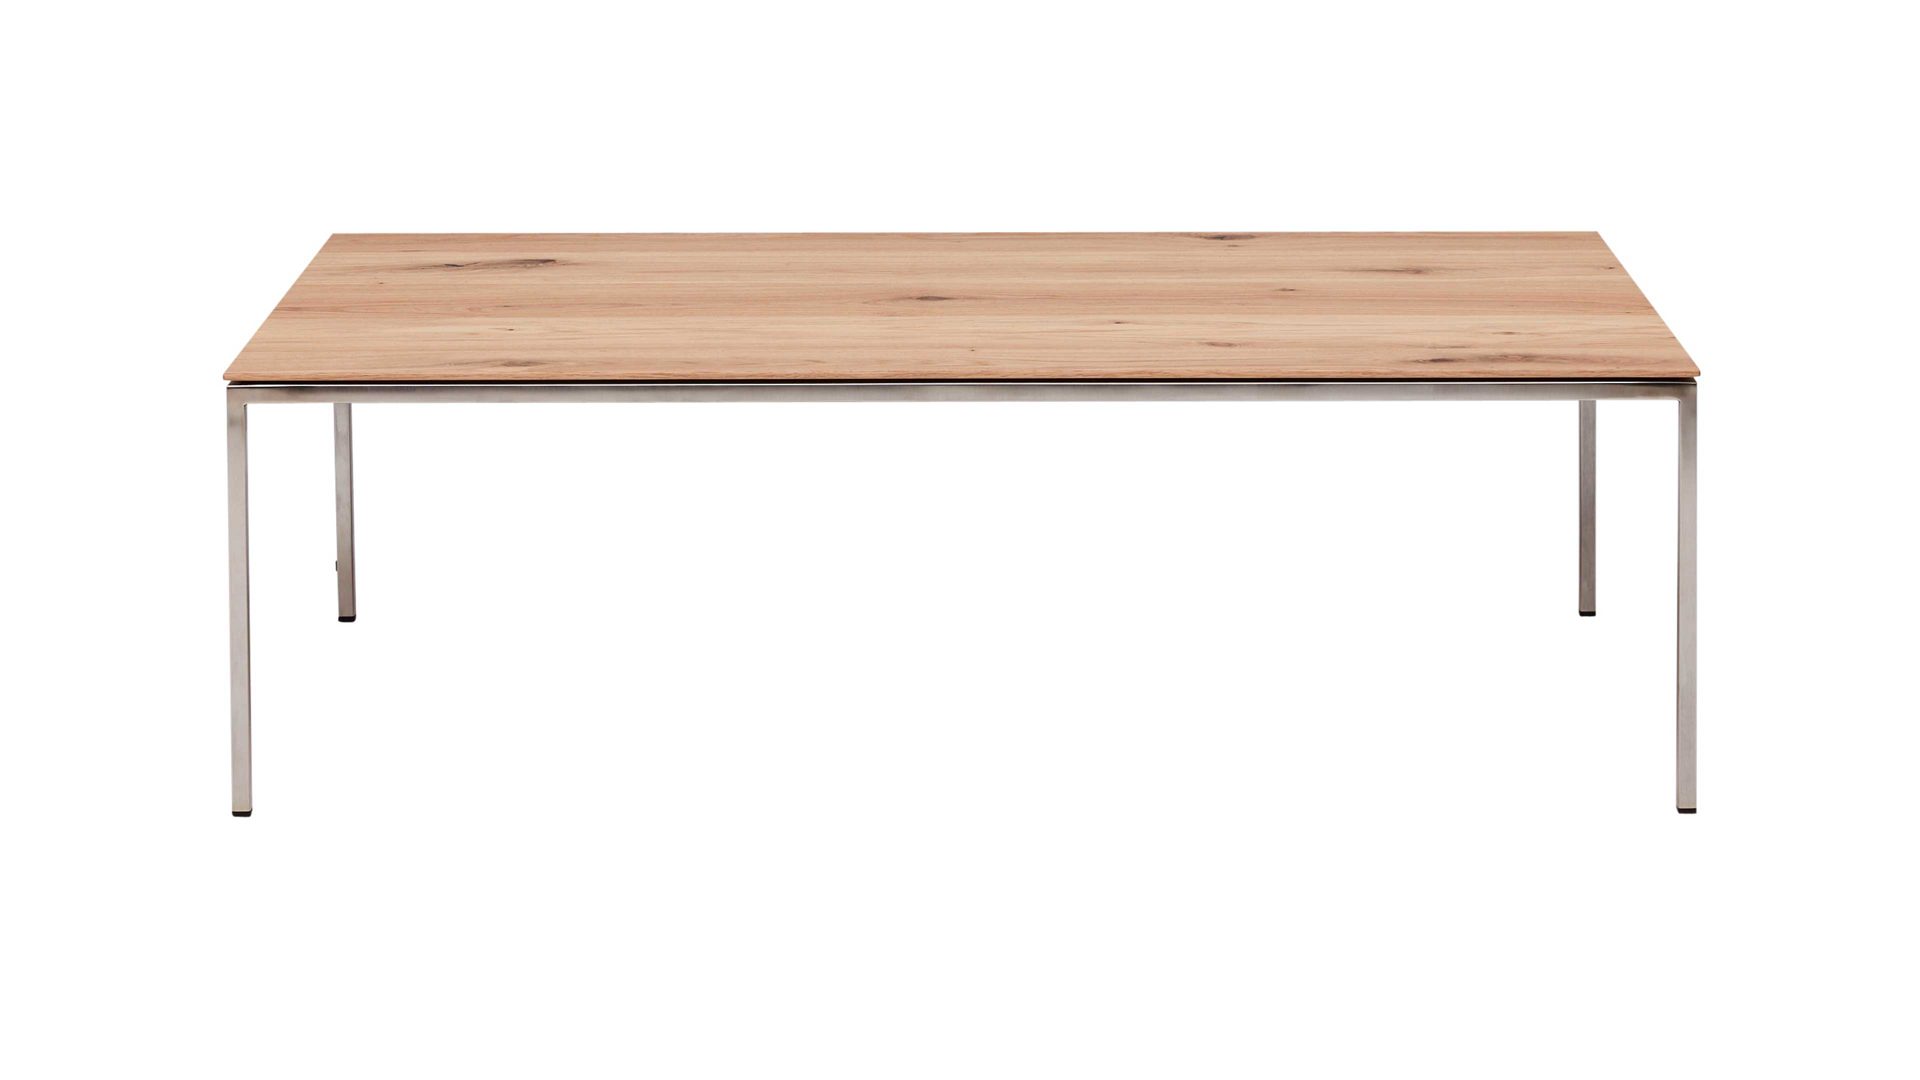 Couchtisch Interliving aus Holz in Holzfarben Interliving Couchtisch Serie 6201 bzw. Wohnzimmertisch ca. 100 x 35 x 60 cm - geölte Wildeiche & Edelstahl